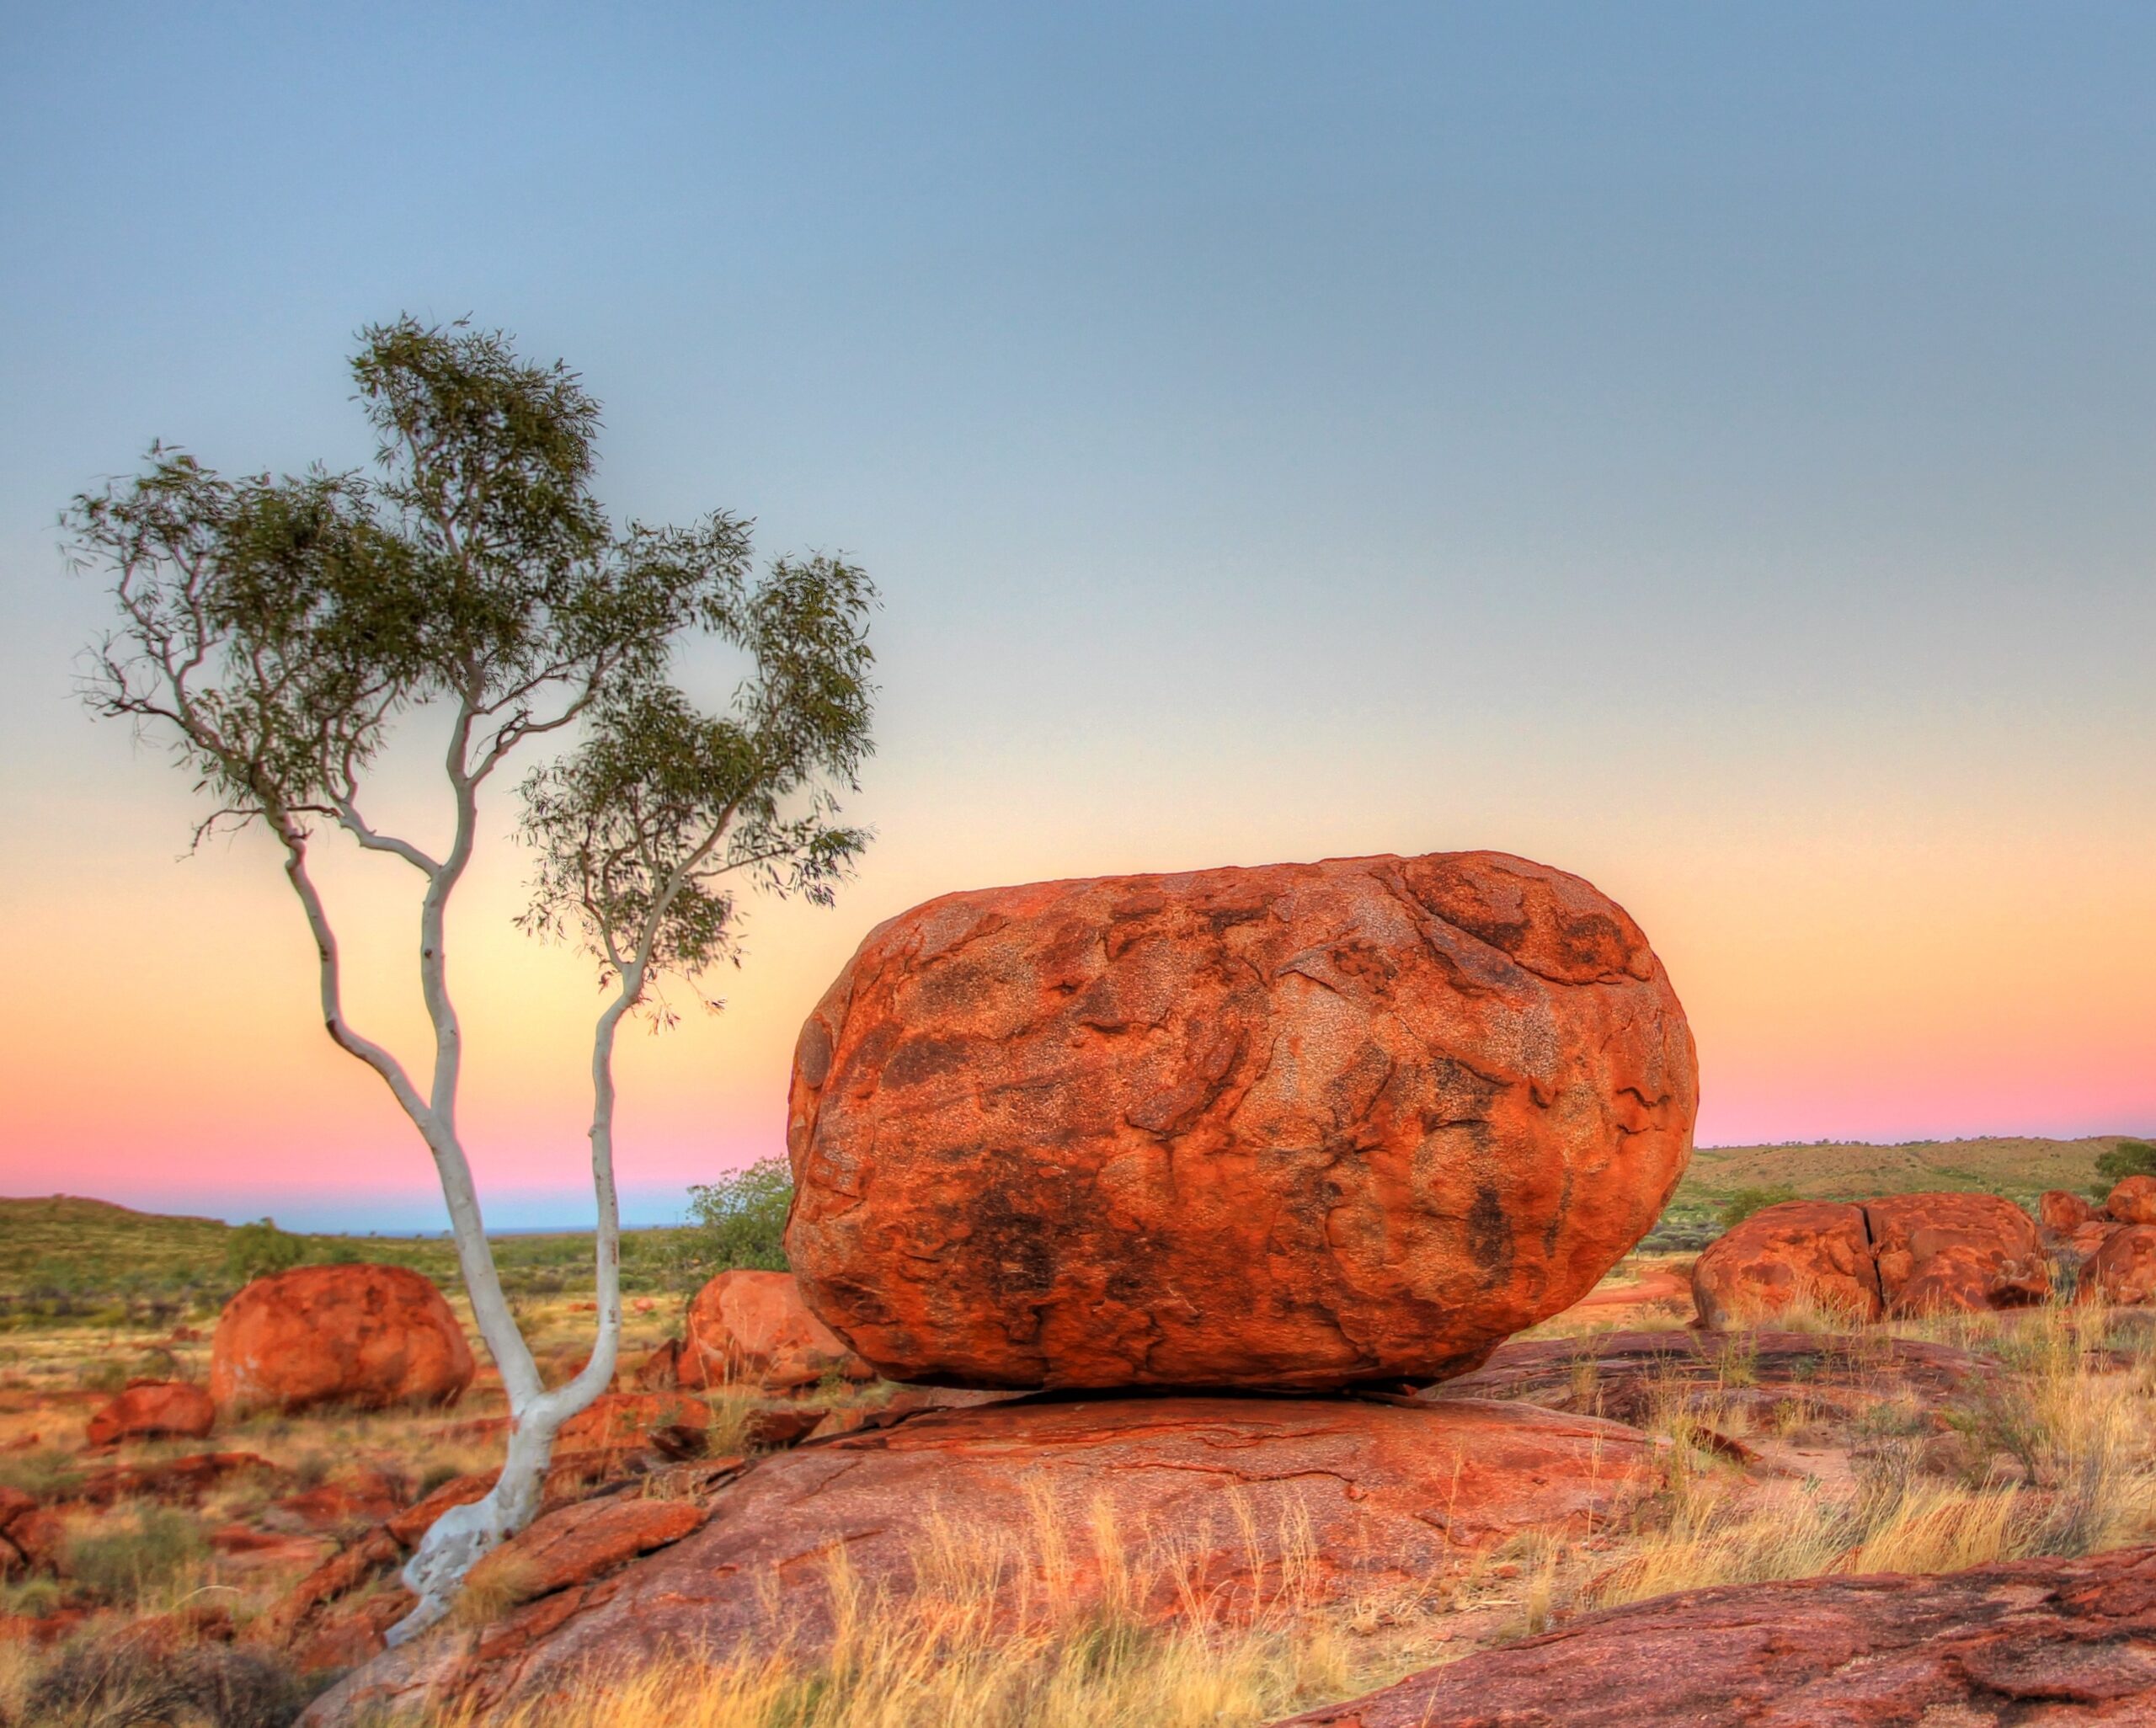 Karlu Karlu – Devils Marbles in outback Australia